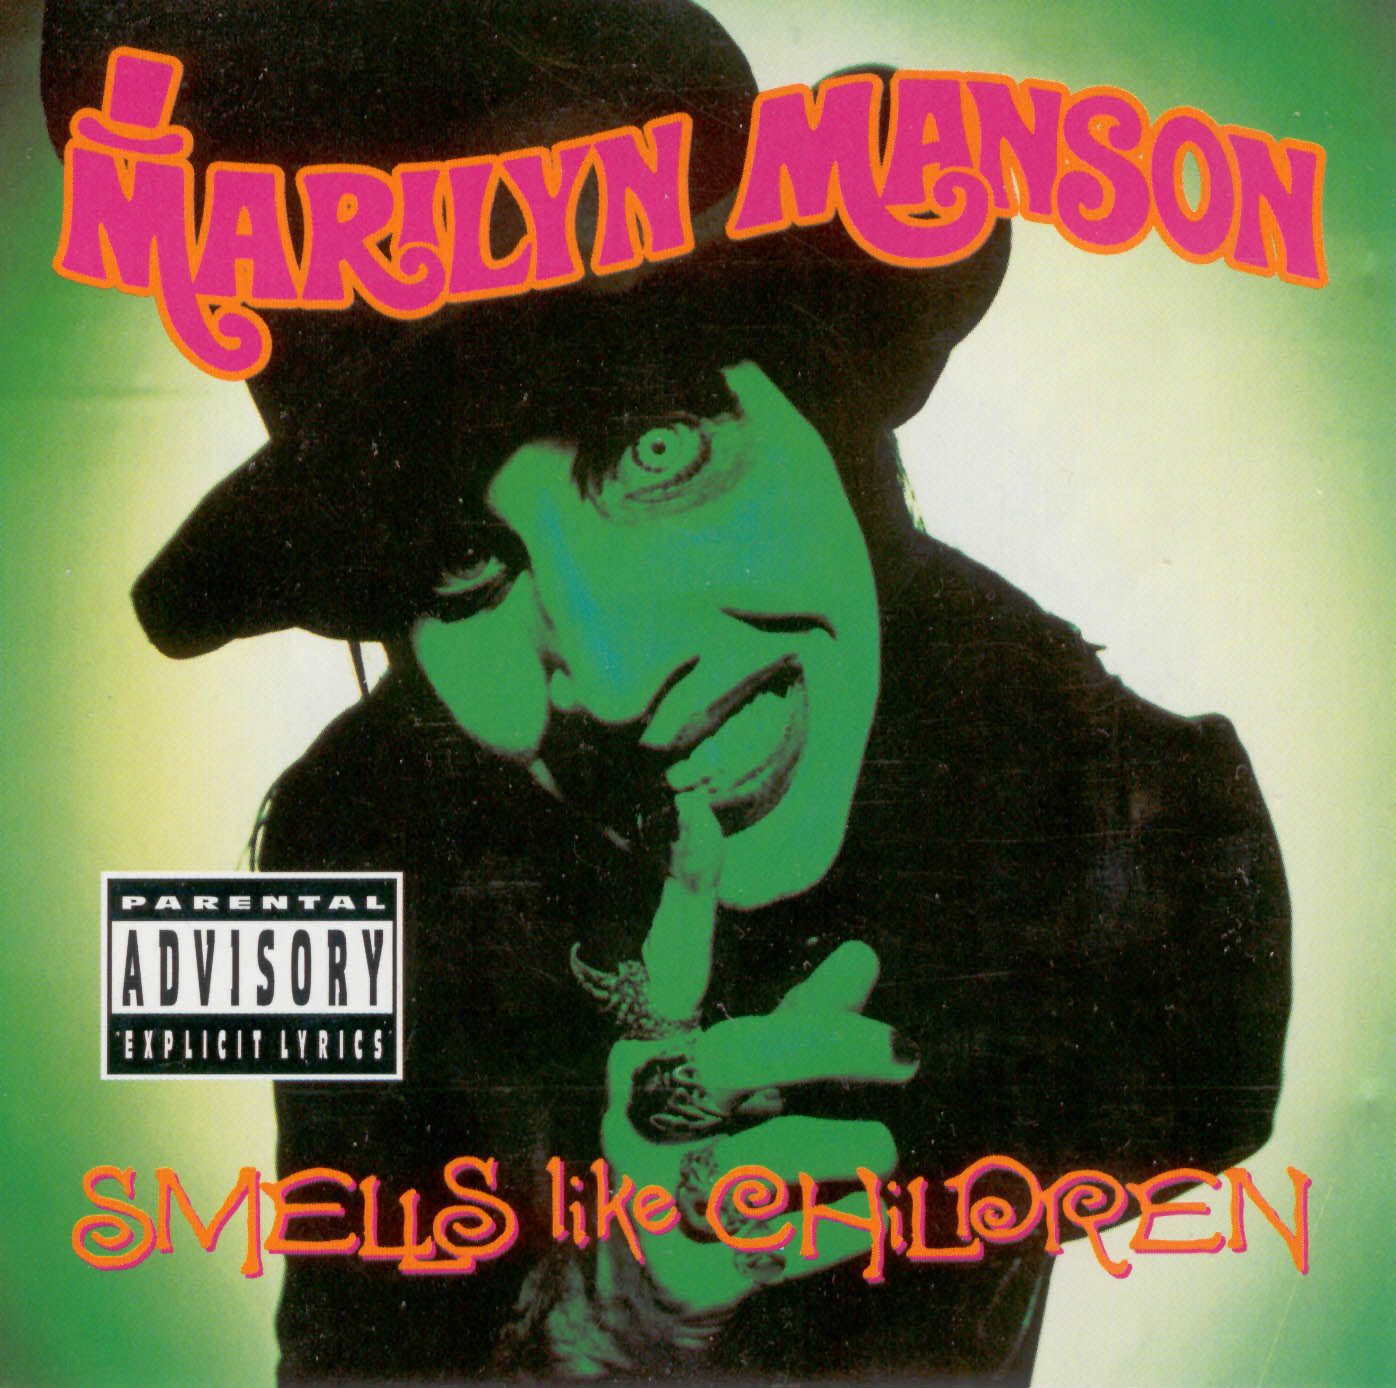 MARILYN MANSON - Smells Like Children cover 